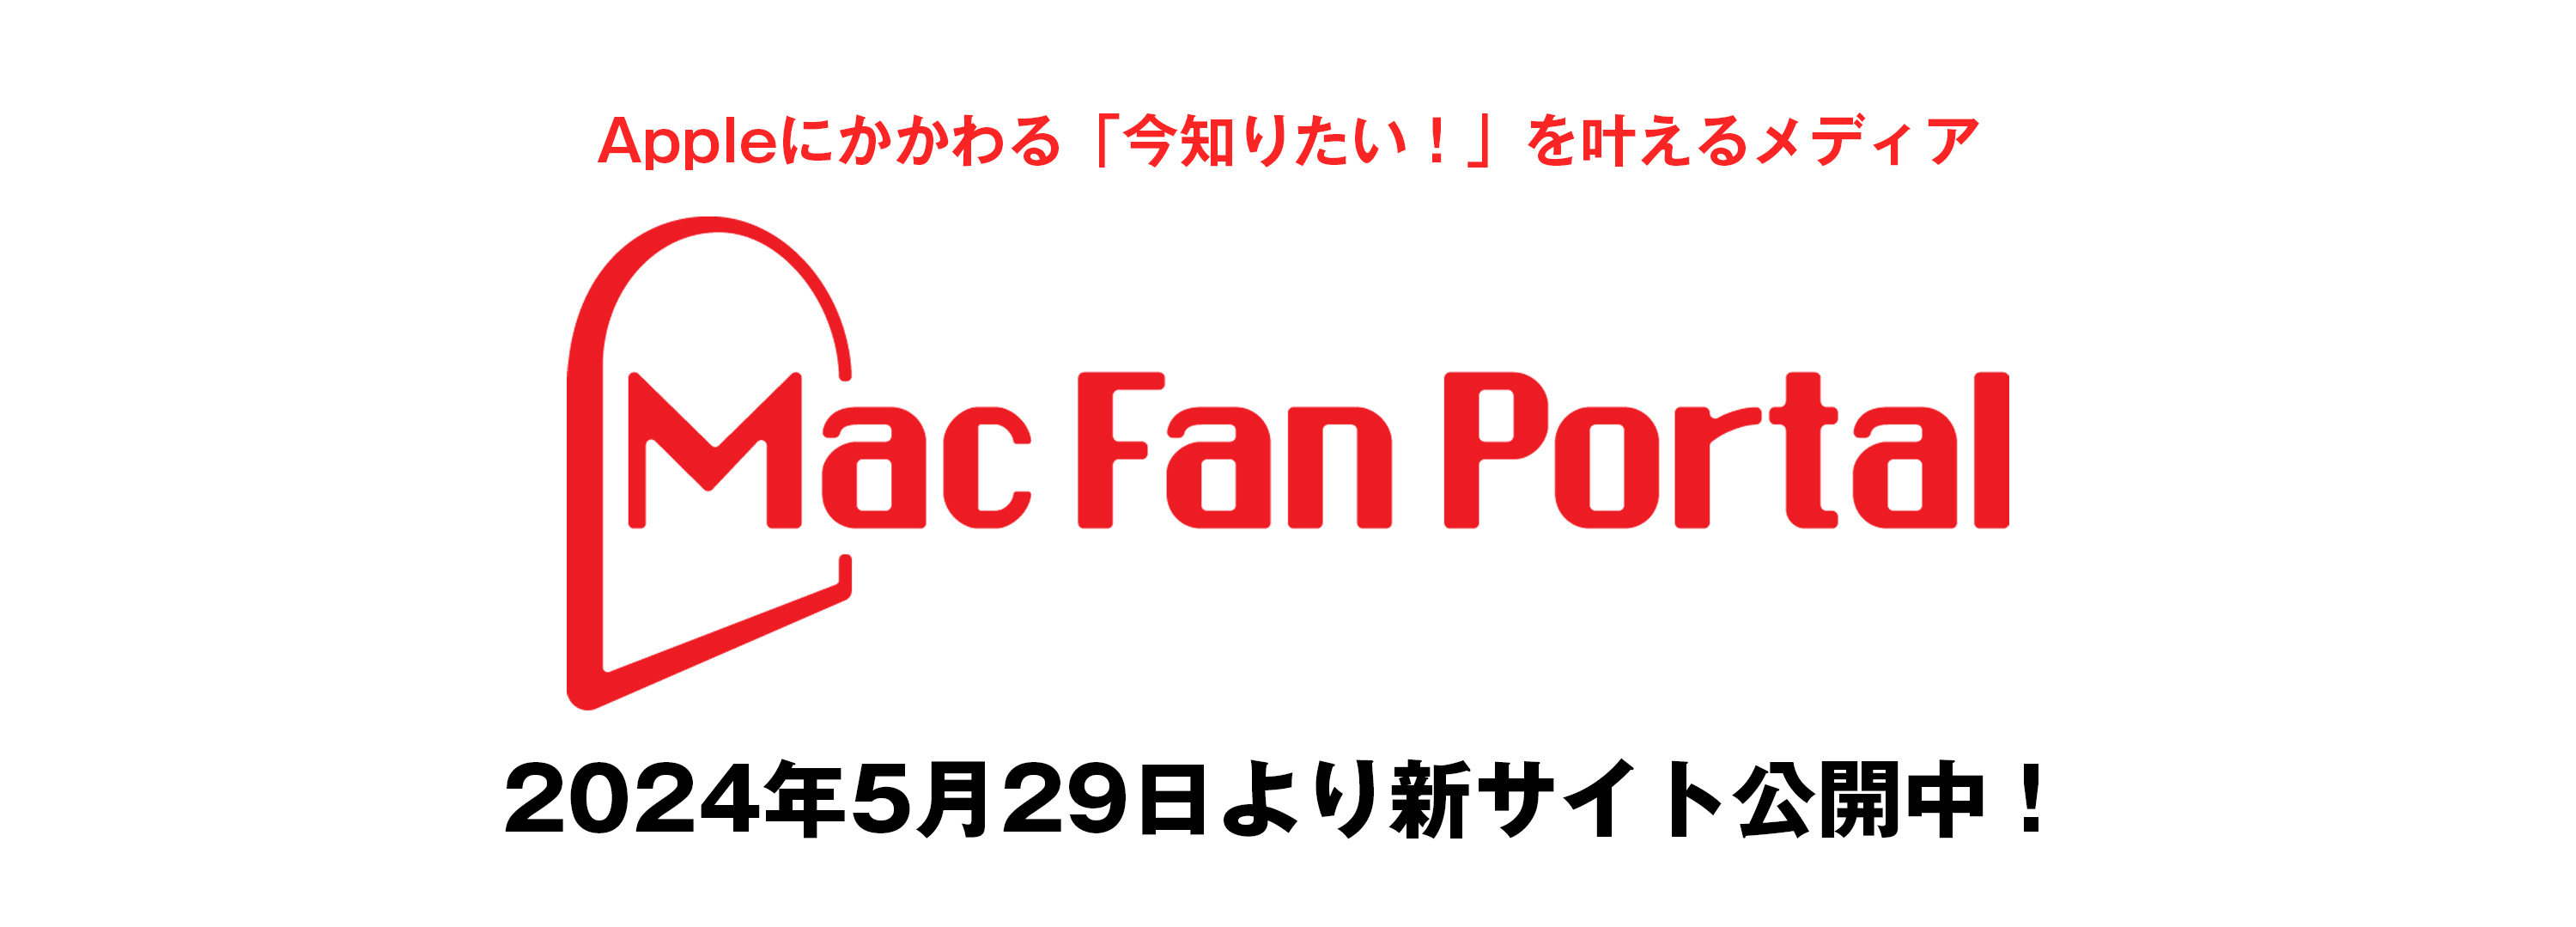 Mac Fan Portal リンク画像